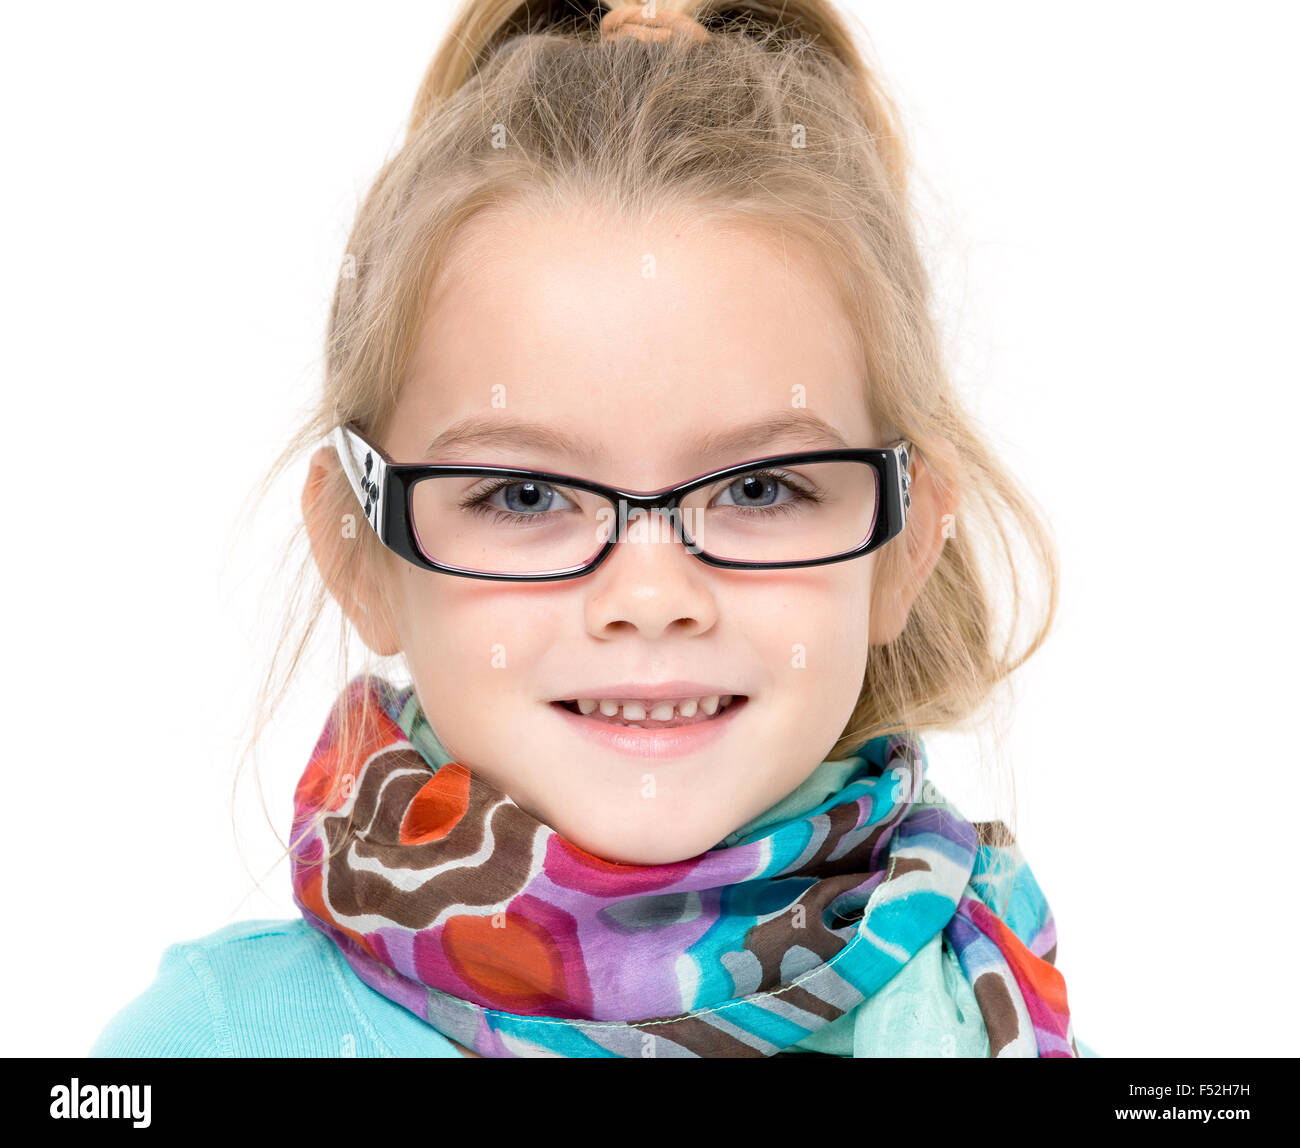 Little Girl in Eyeglasses Posing, on white background Stock Photo